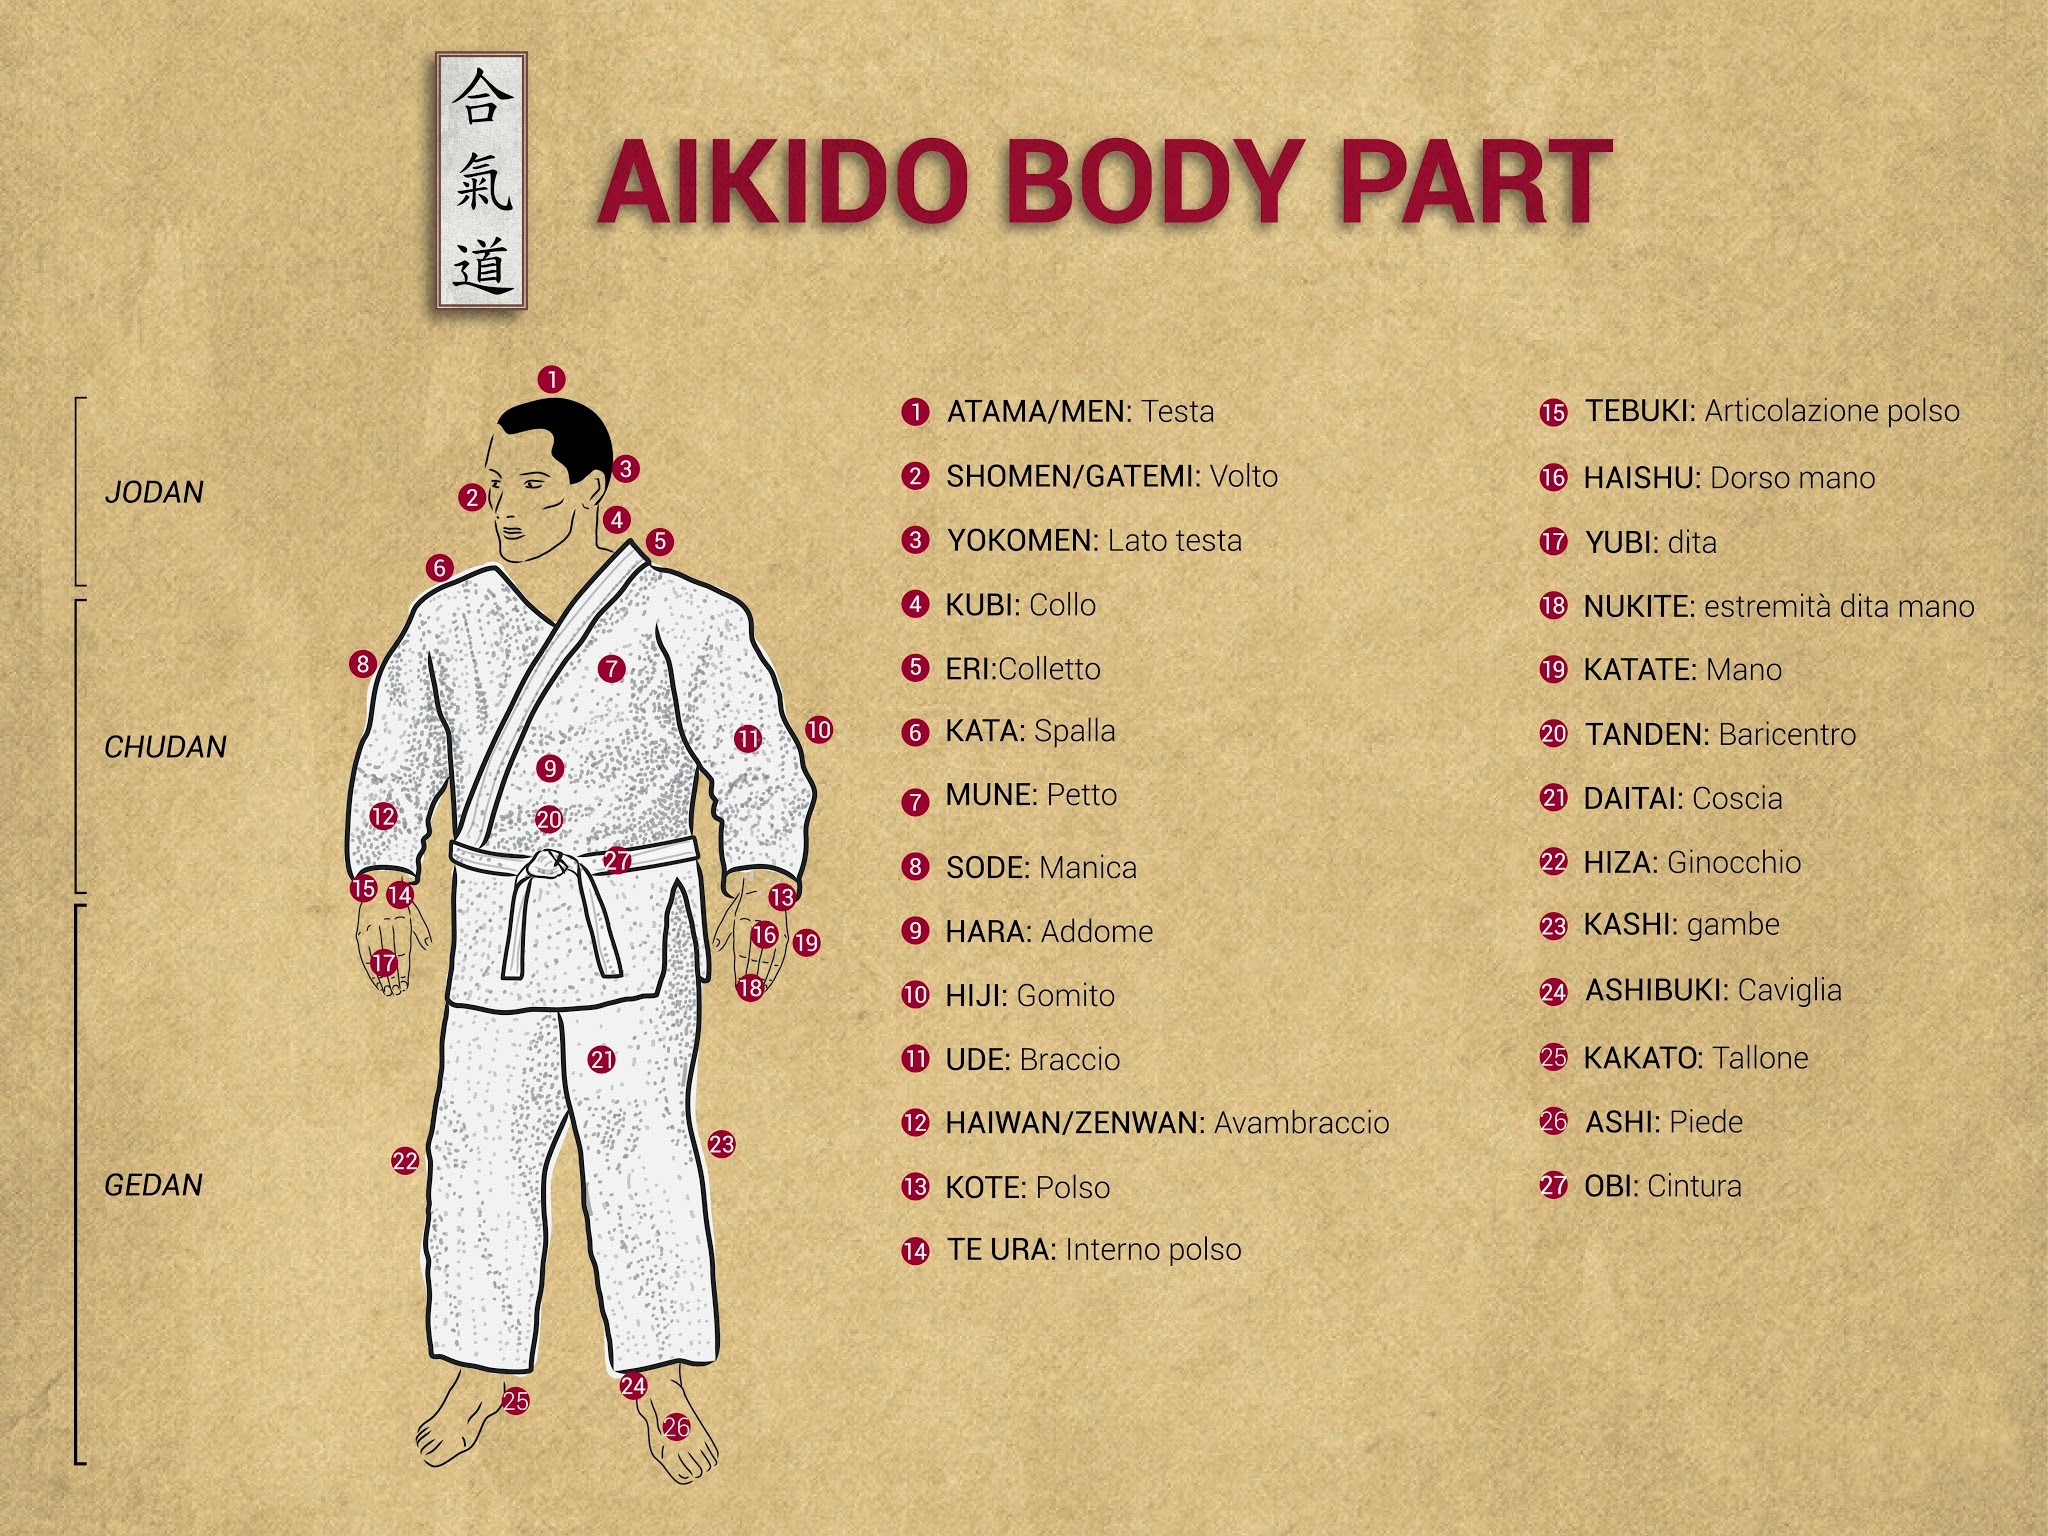 HD Aikido Wallpaper | PixelsTalk.Net